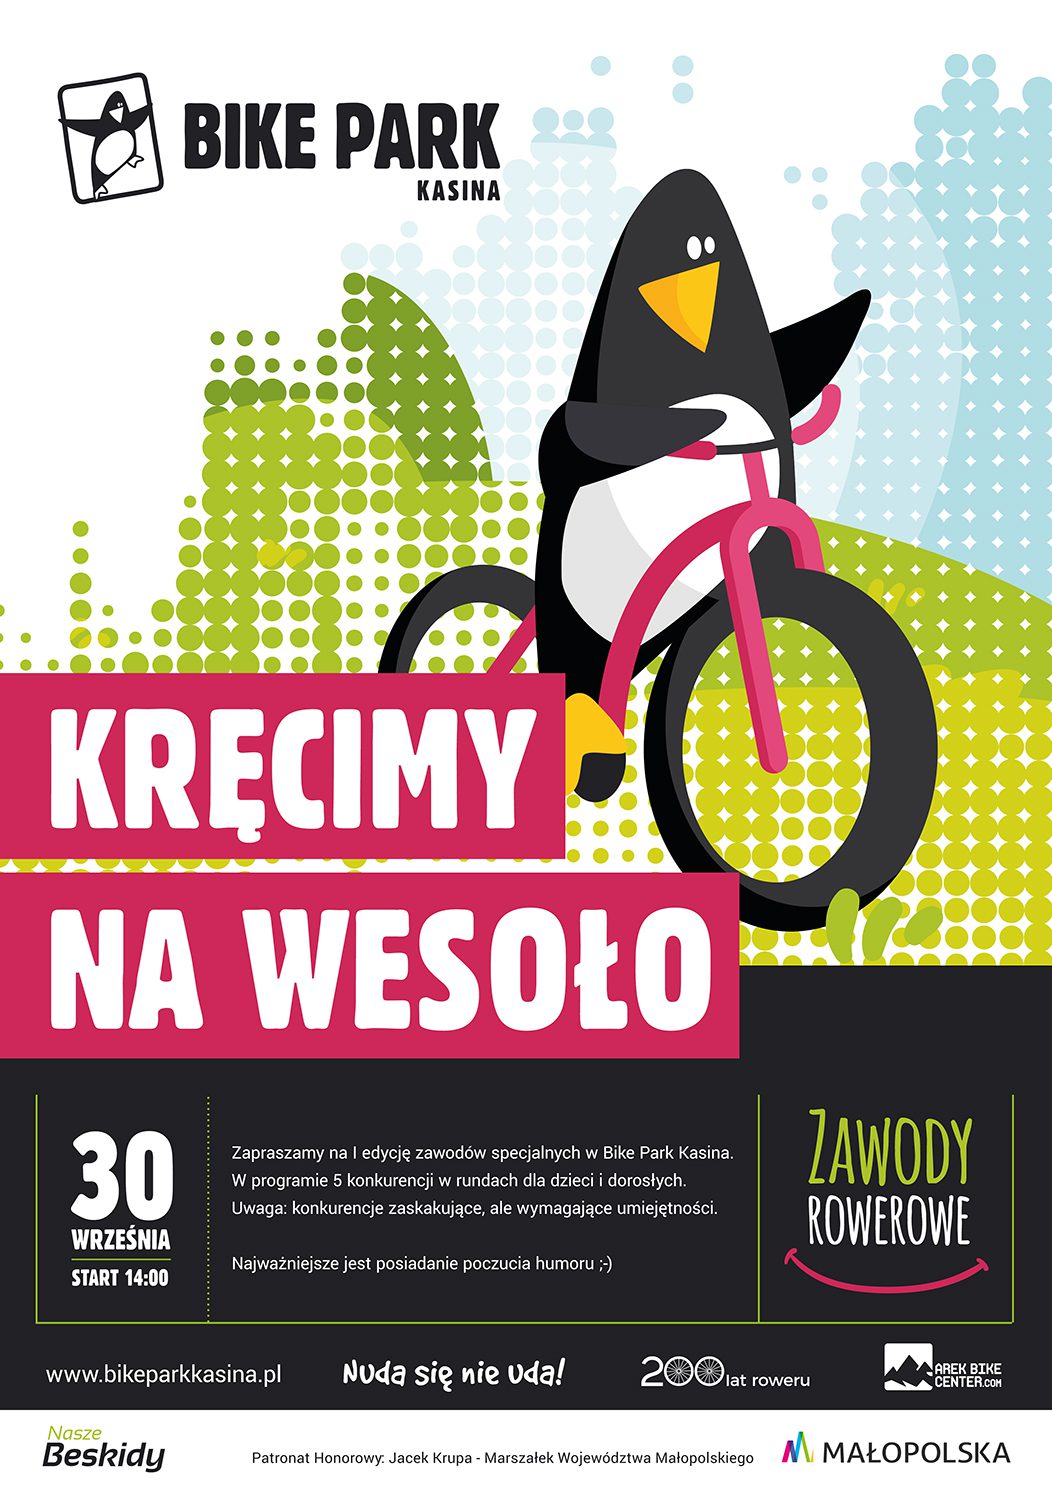 Zakończenie sezonu rowerowego - zawody o Puchar Bike Park Kasina